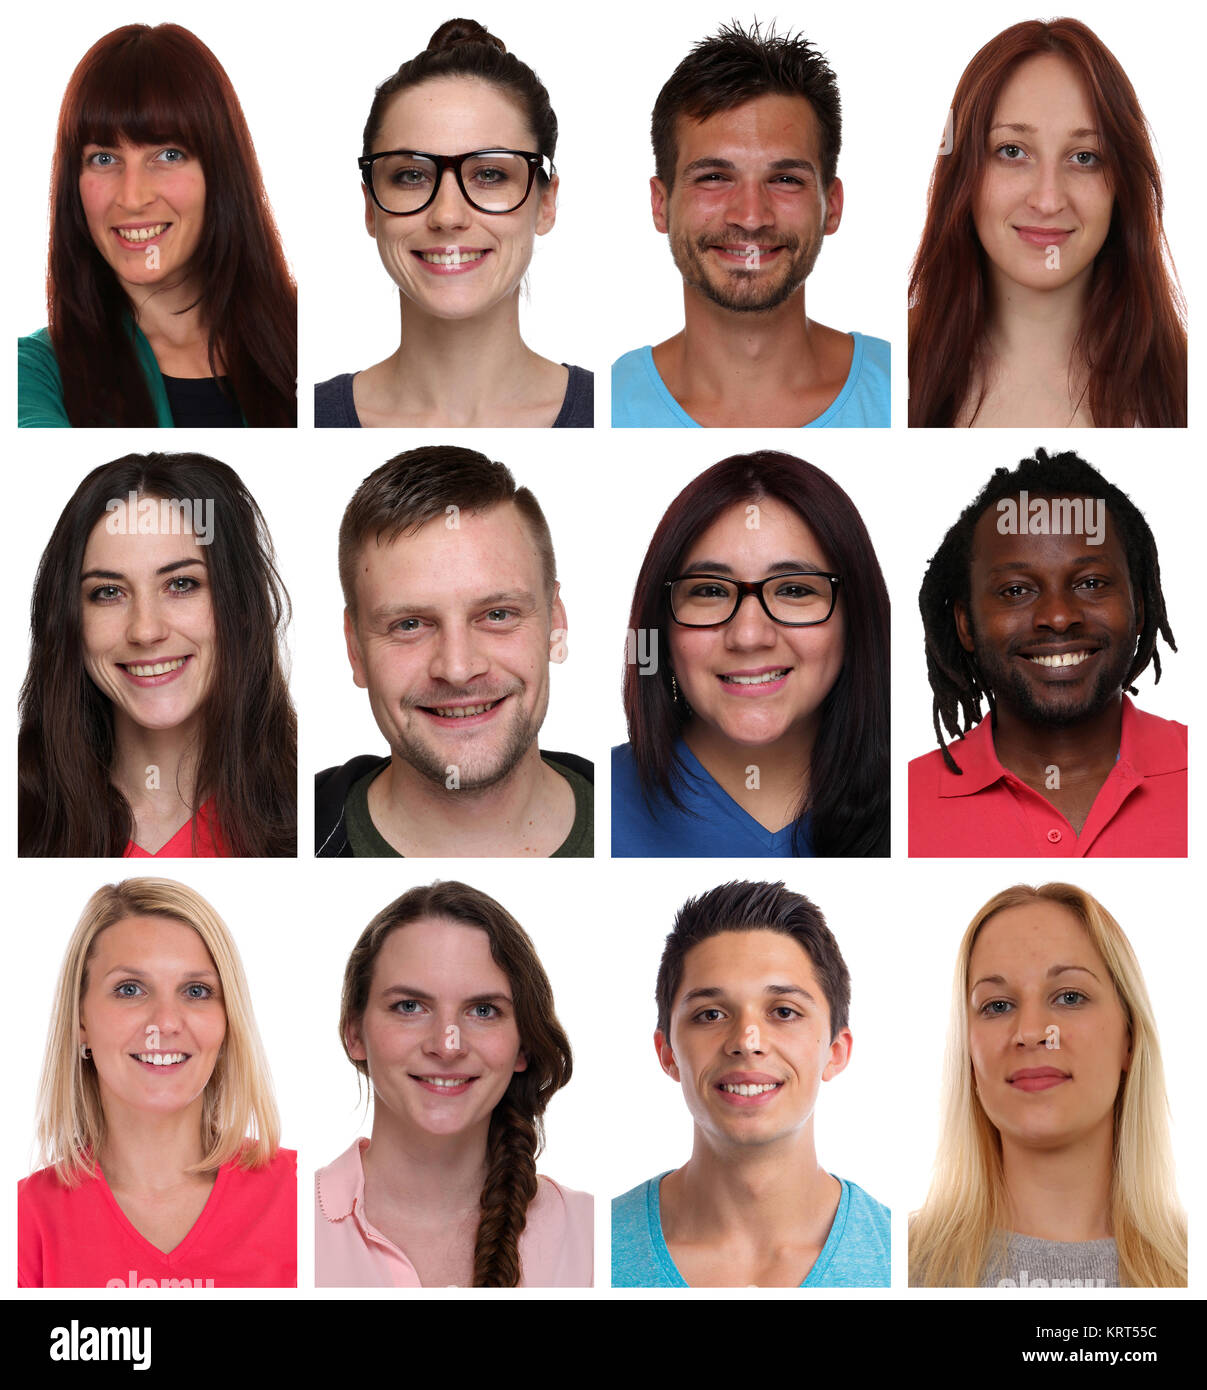 Portrait Collage multikulturell Jugendliche Menschen junge Leute Gruppe Gesichter Freisteller freigestellt vor einem weissen Hintergrund Stock Photo